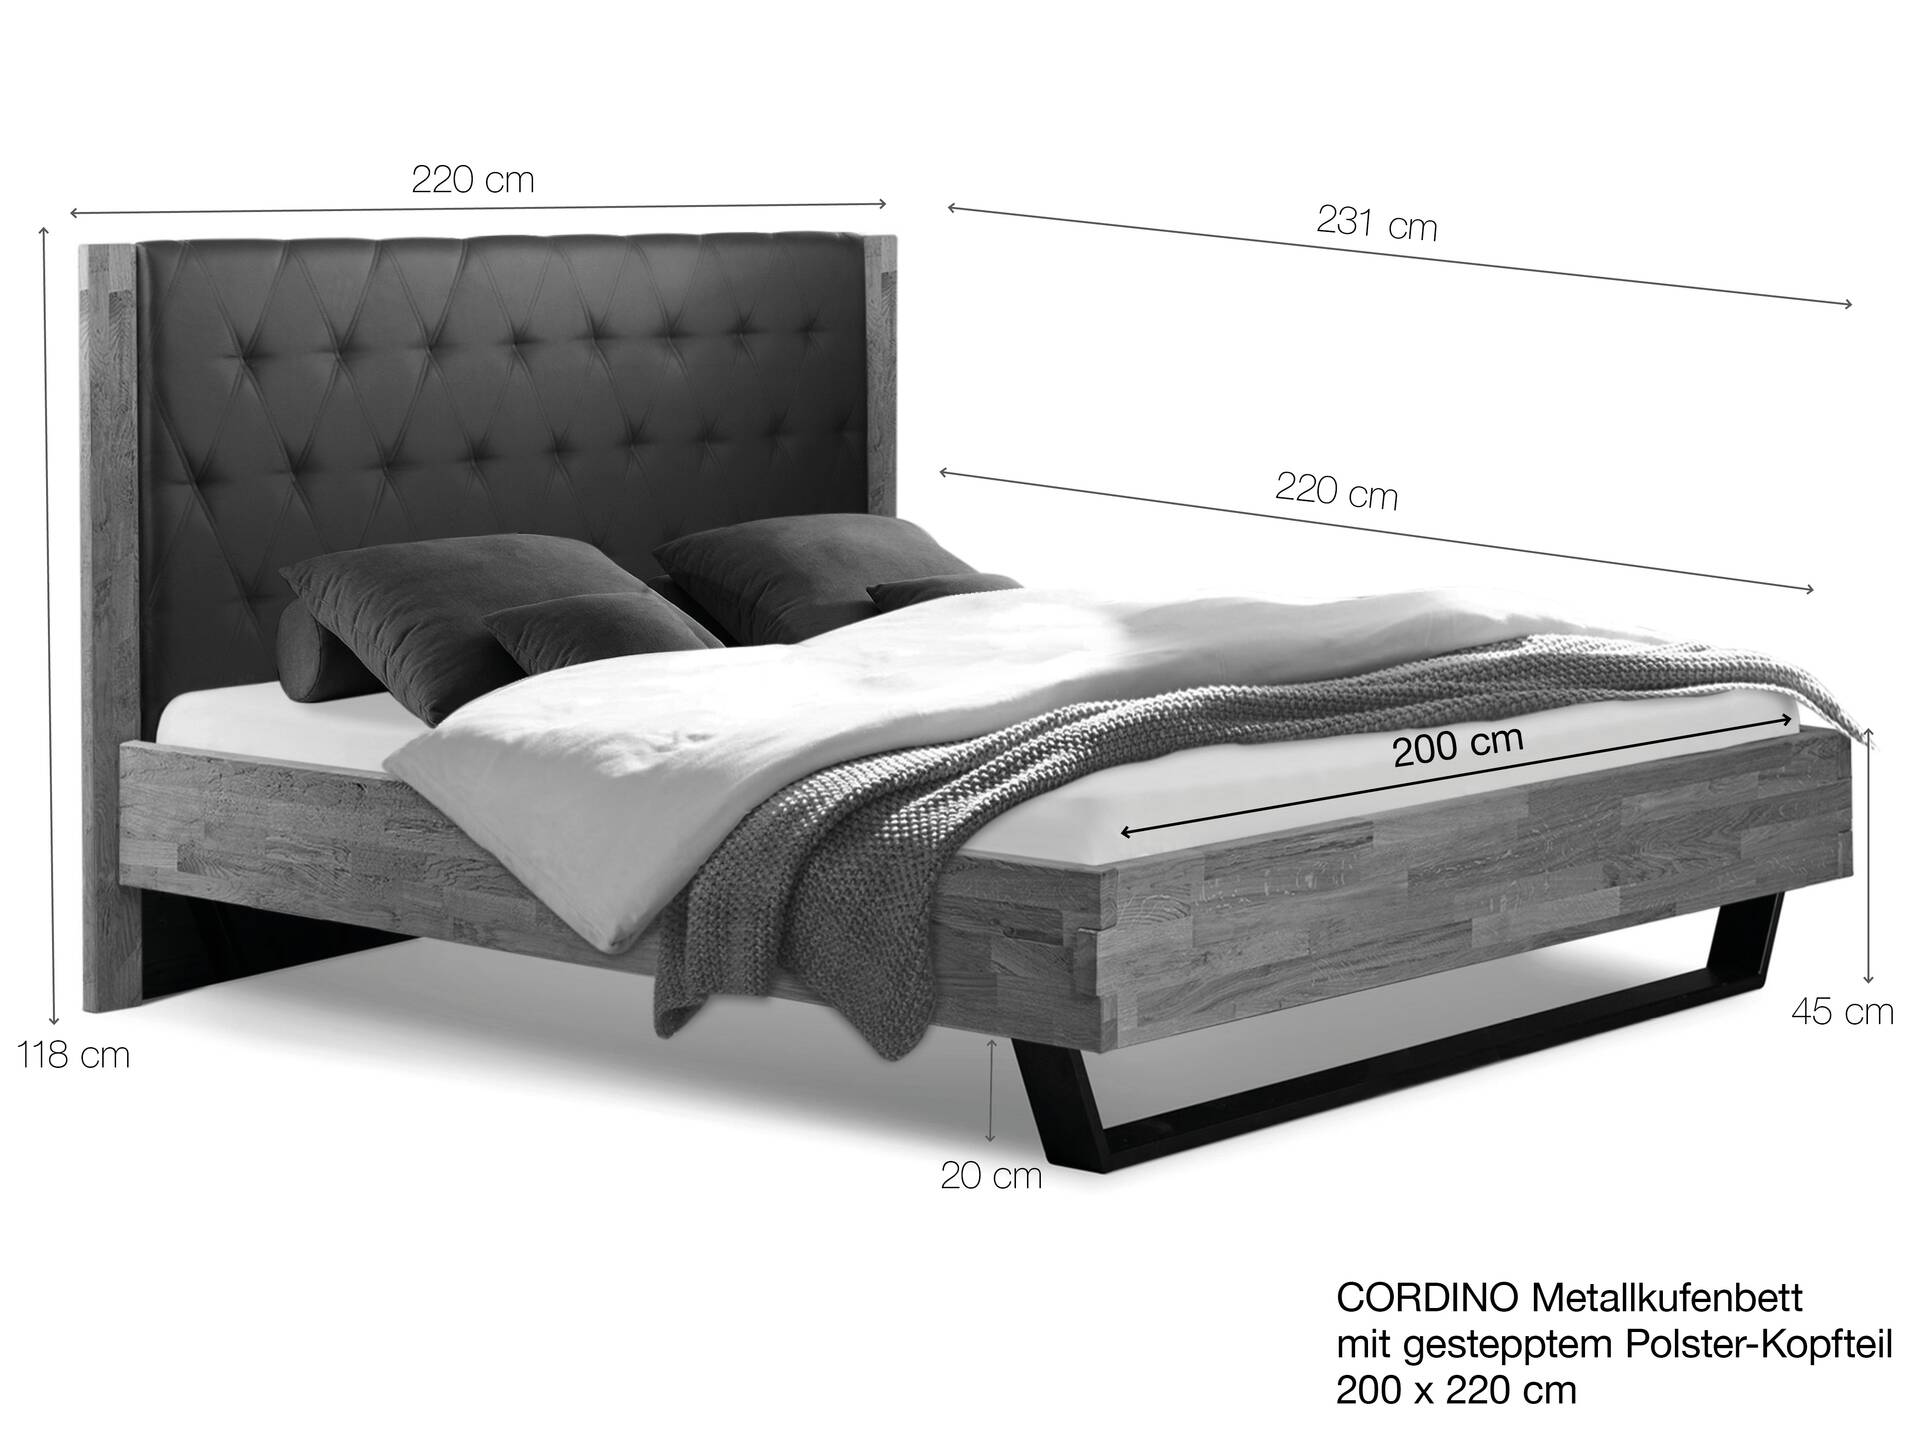 CORDINO Kufenbett aus Eiche mit gestepptem Polsterkopfteil, Material Massivholz 200 x 220 cm | Eiche lackiert | Stoff Braun | gebürstet